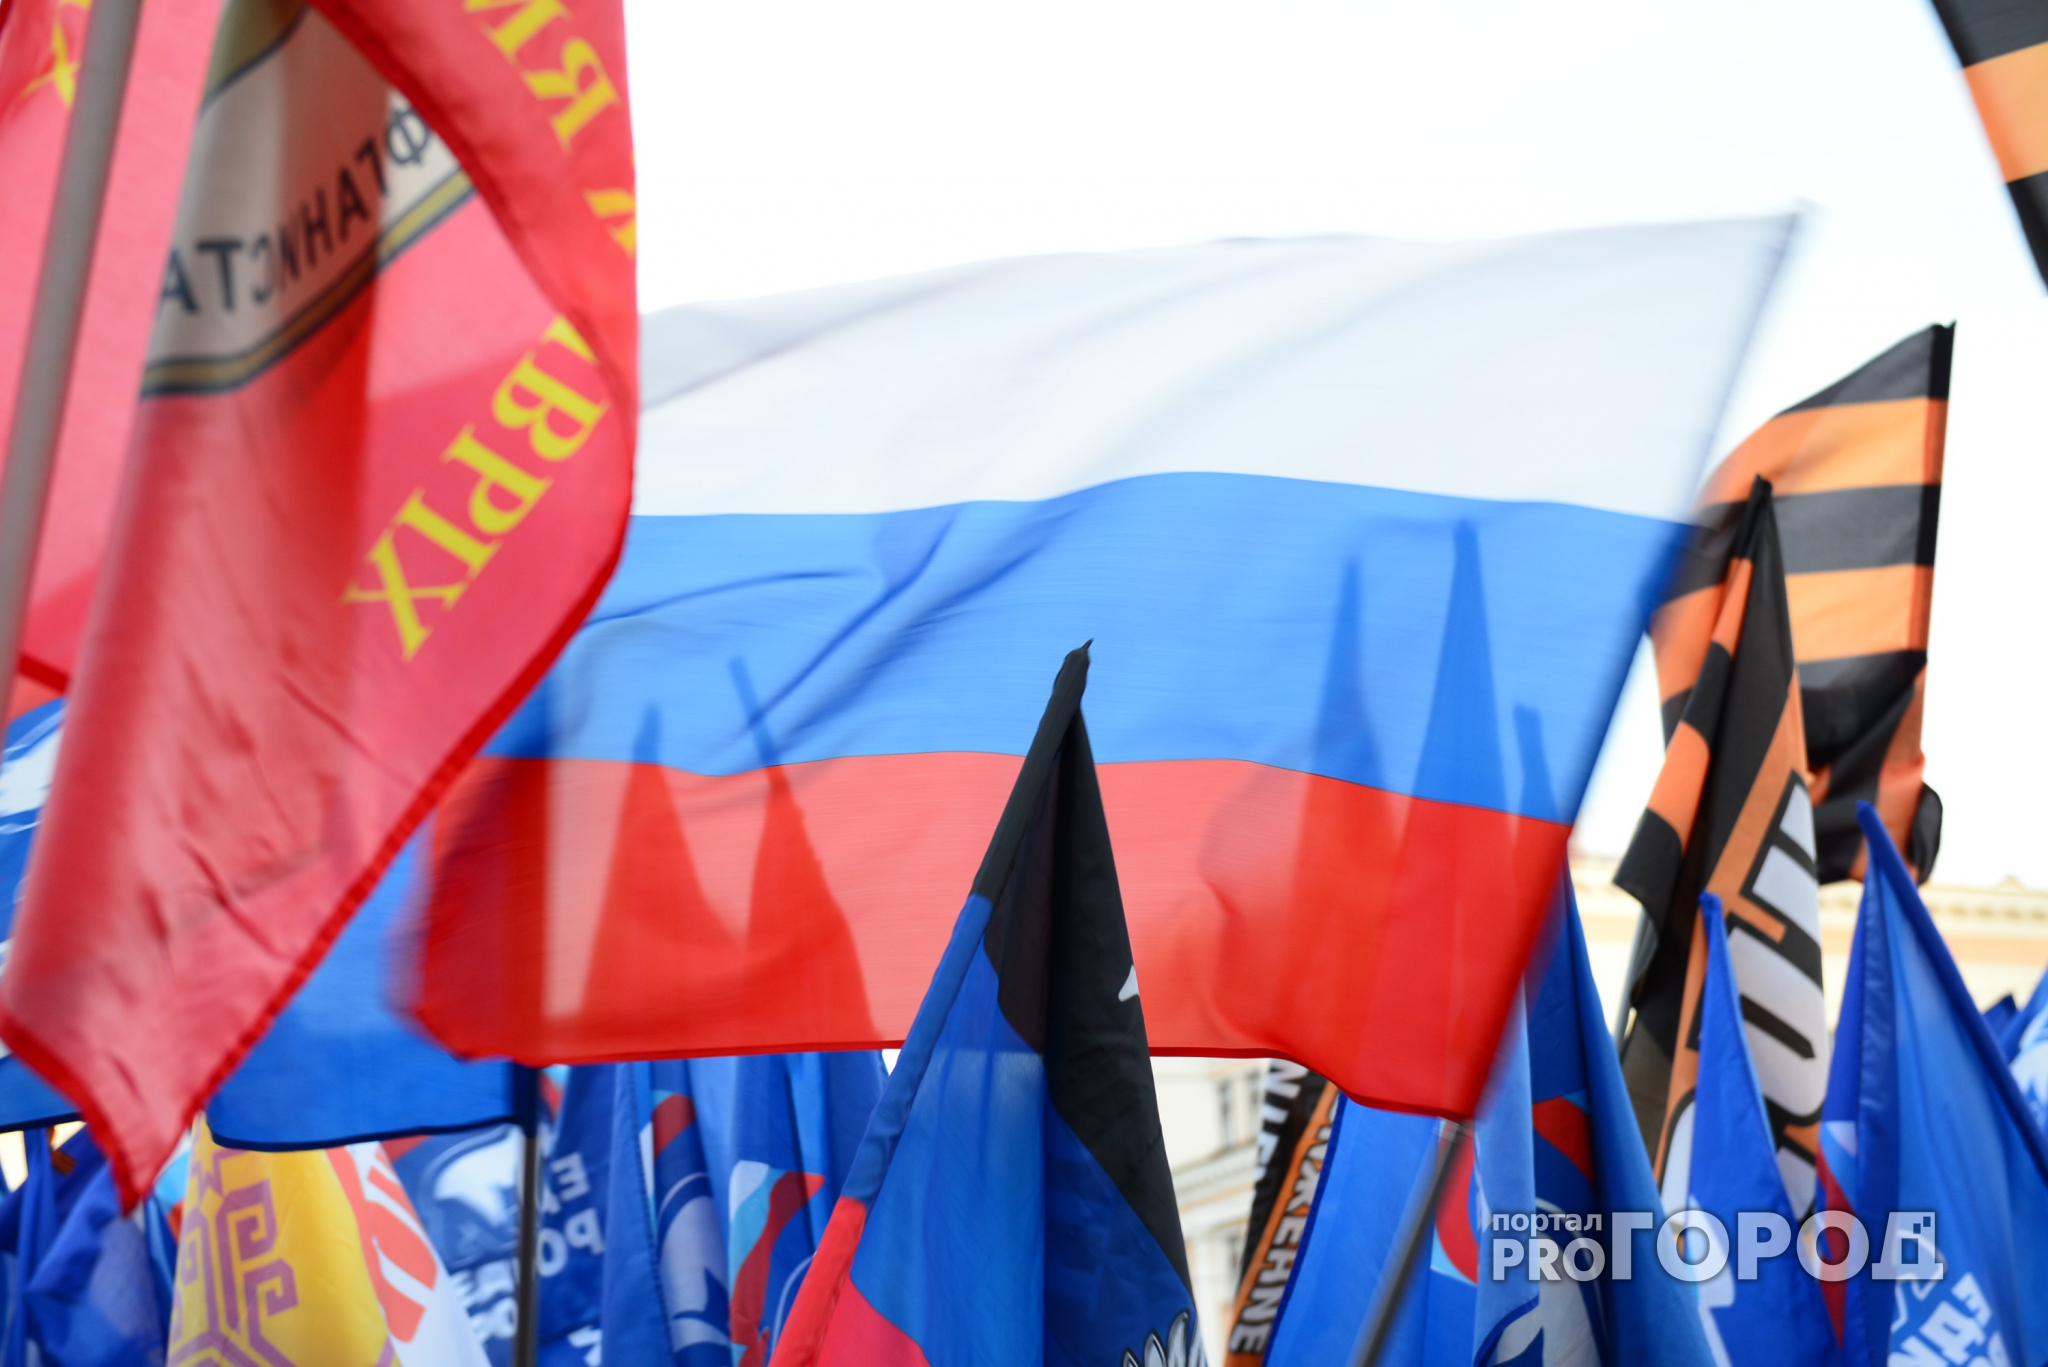 Сегодня, 22 августа, мы отмечаем сразу два праздника – день Российского Флага и день Рождения Pro Города